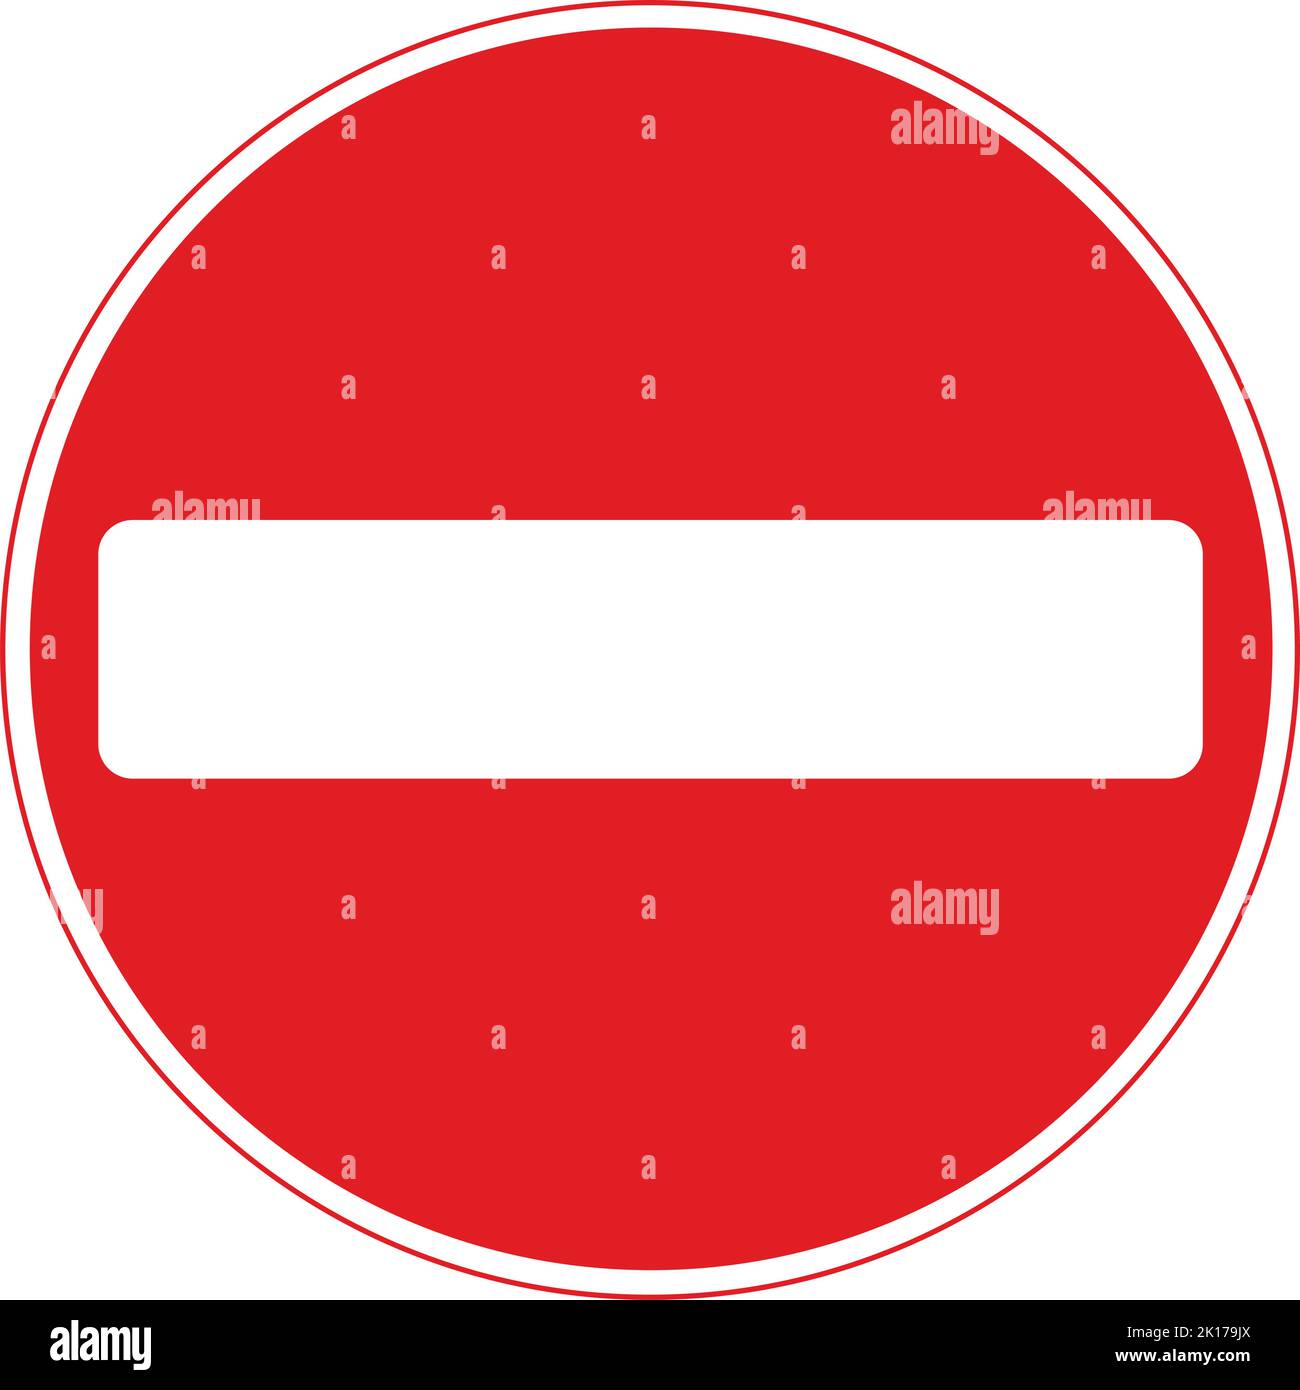 Keine Einfahrt für den Fahrzeugverkehr, das Straßenverkehrsschild, Hinweisschilder, Schilder mit roten Kreisen sind meist unerschwinglich. Platten unter Schilder Stock Vektor